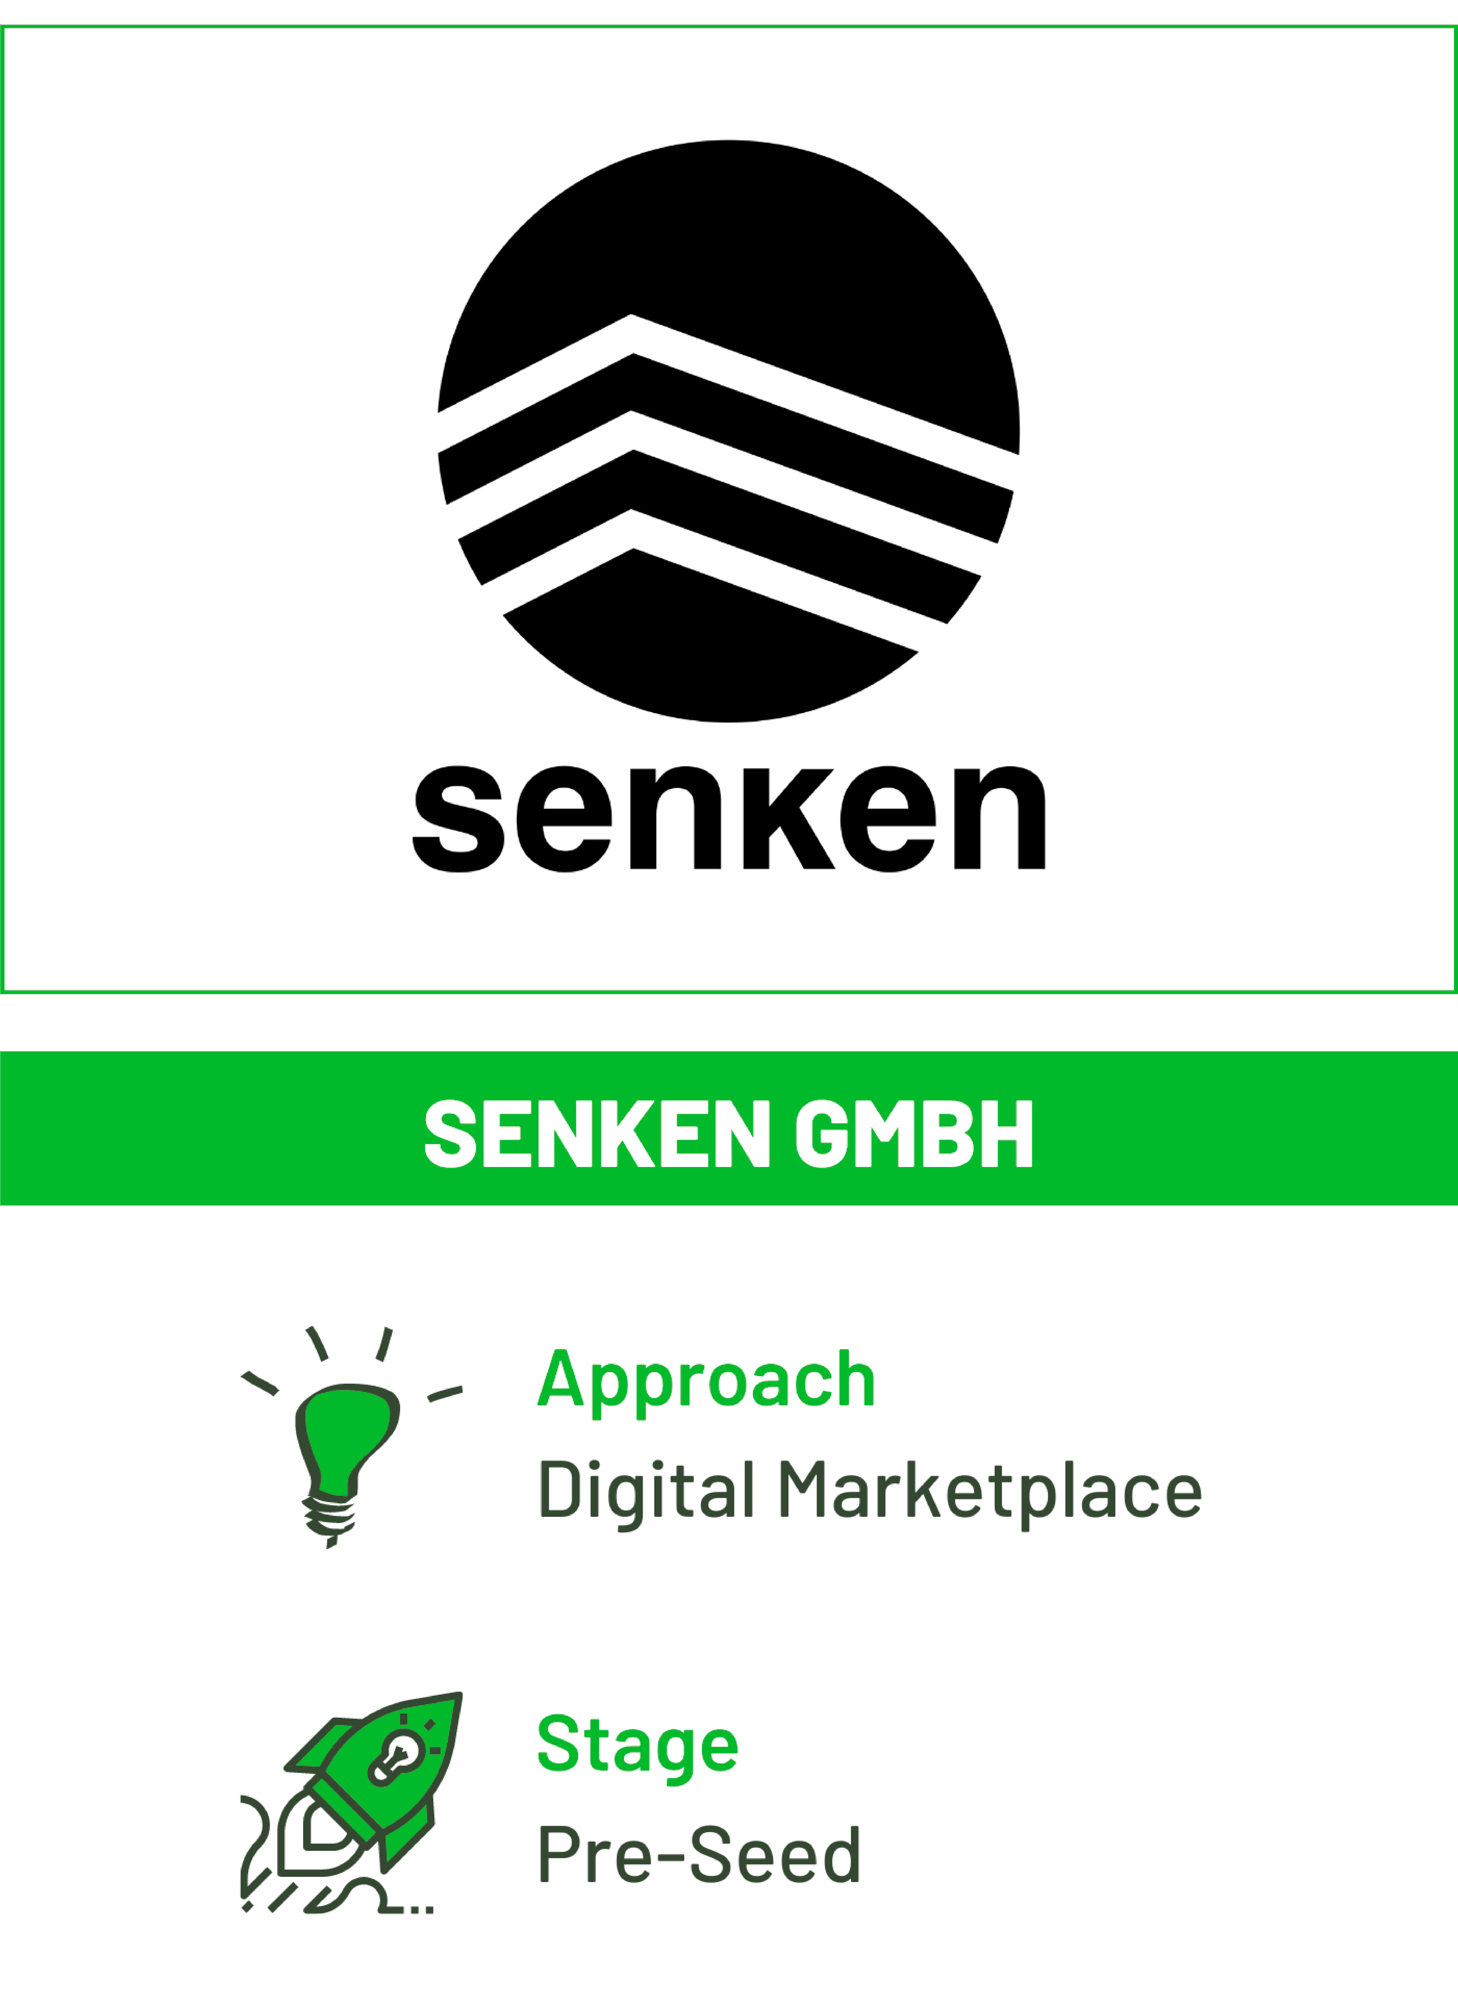 senken-1